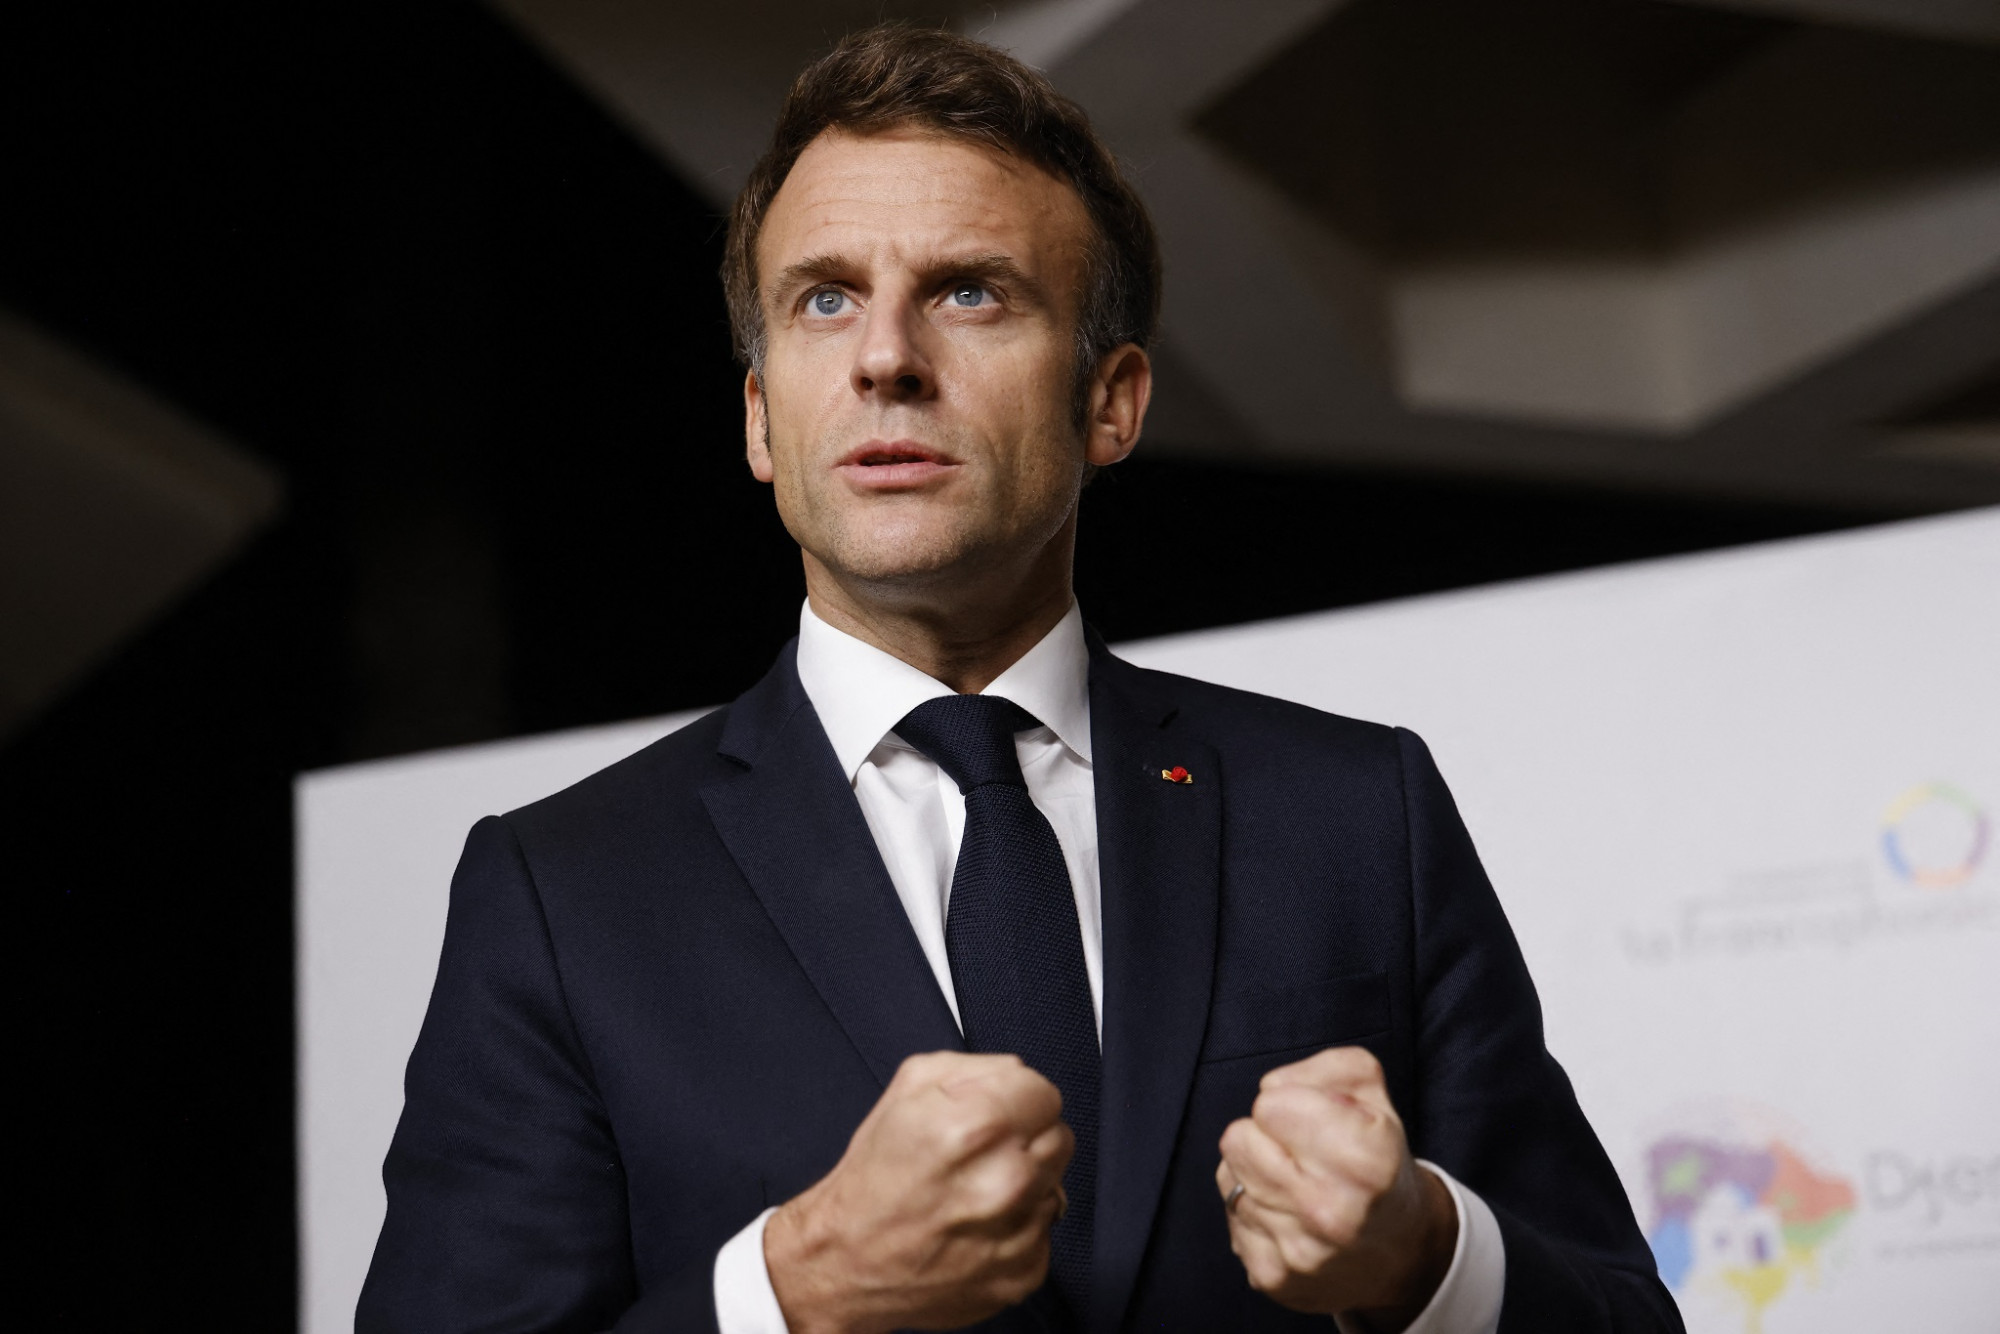 Macron vacsorán győzködi az európai nagyvállalatokat, hogy maradjanak Európában